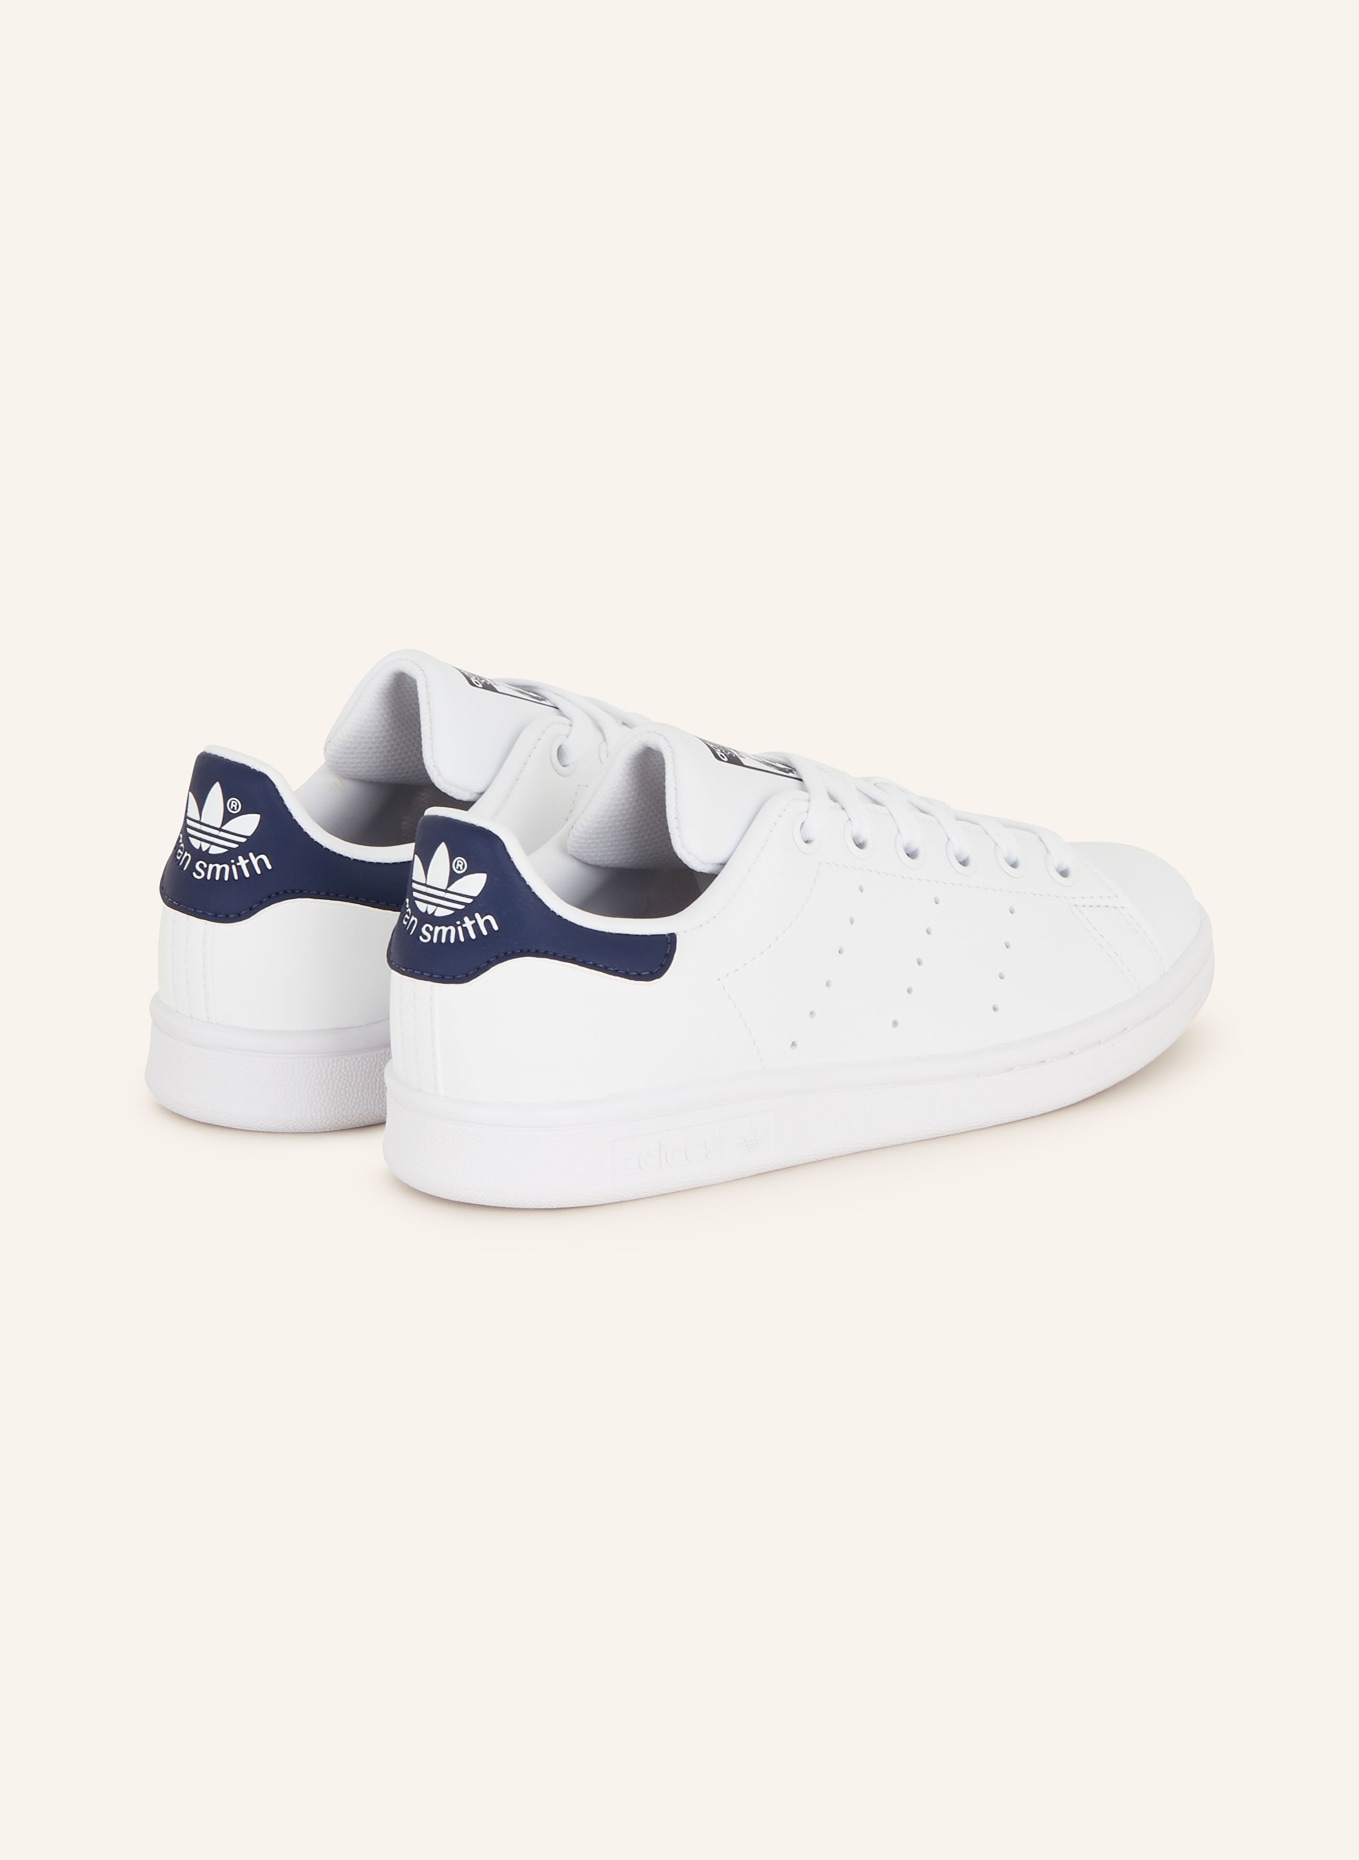 weiss/ STAN SMITH adidas Sneaker dunkelblau Originals in